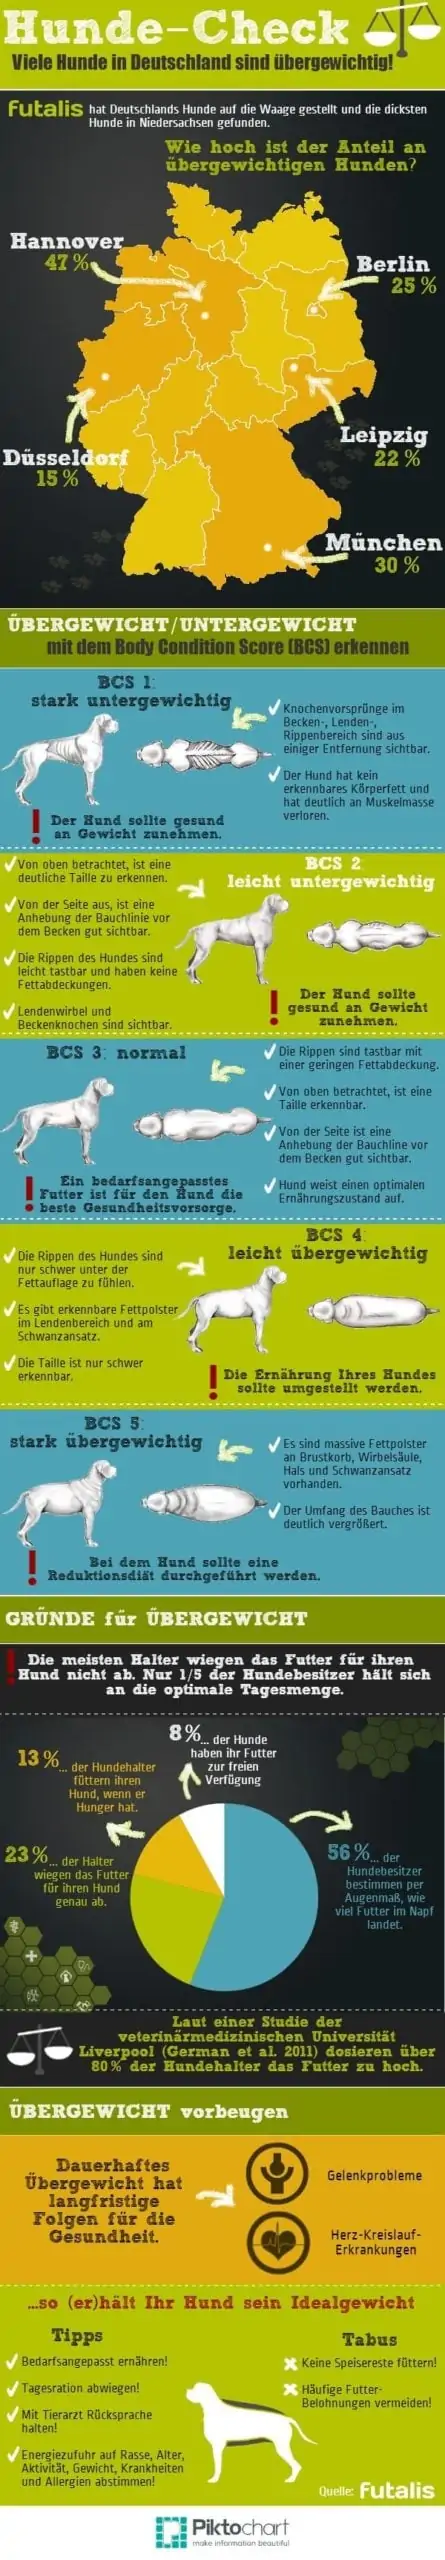 Hunde Check Infografik